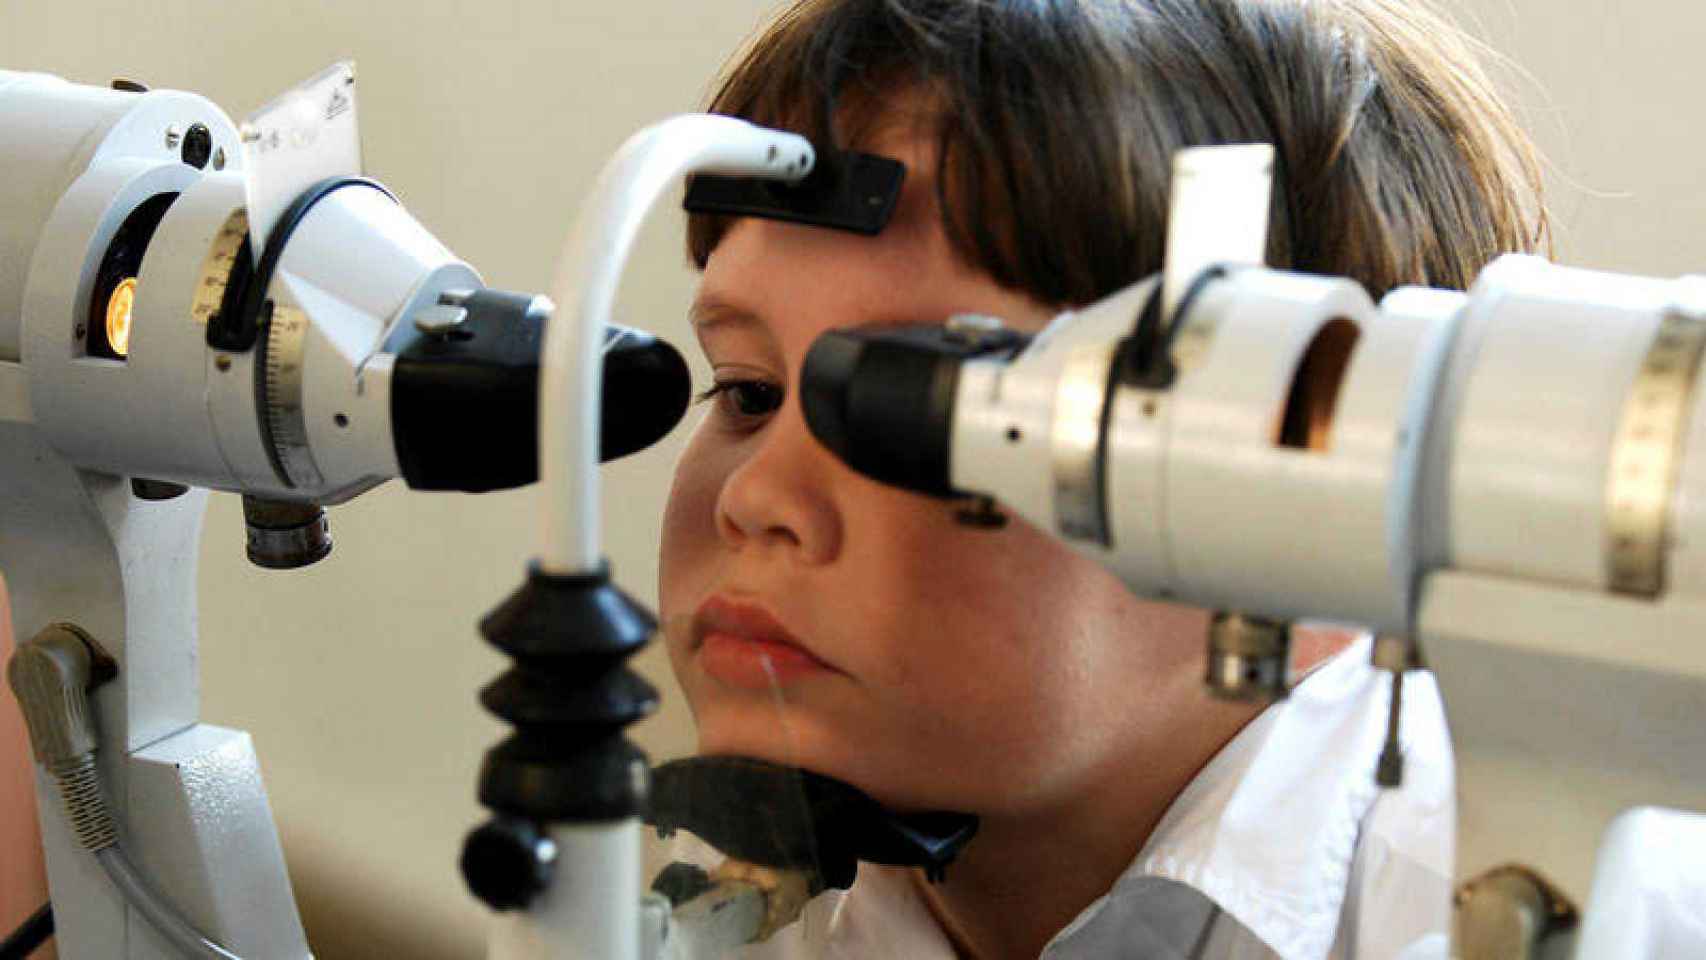 Imagen de archivo de un niño con miopía severa ejercitando la vista con la ayuda de equipo médico